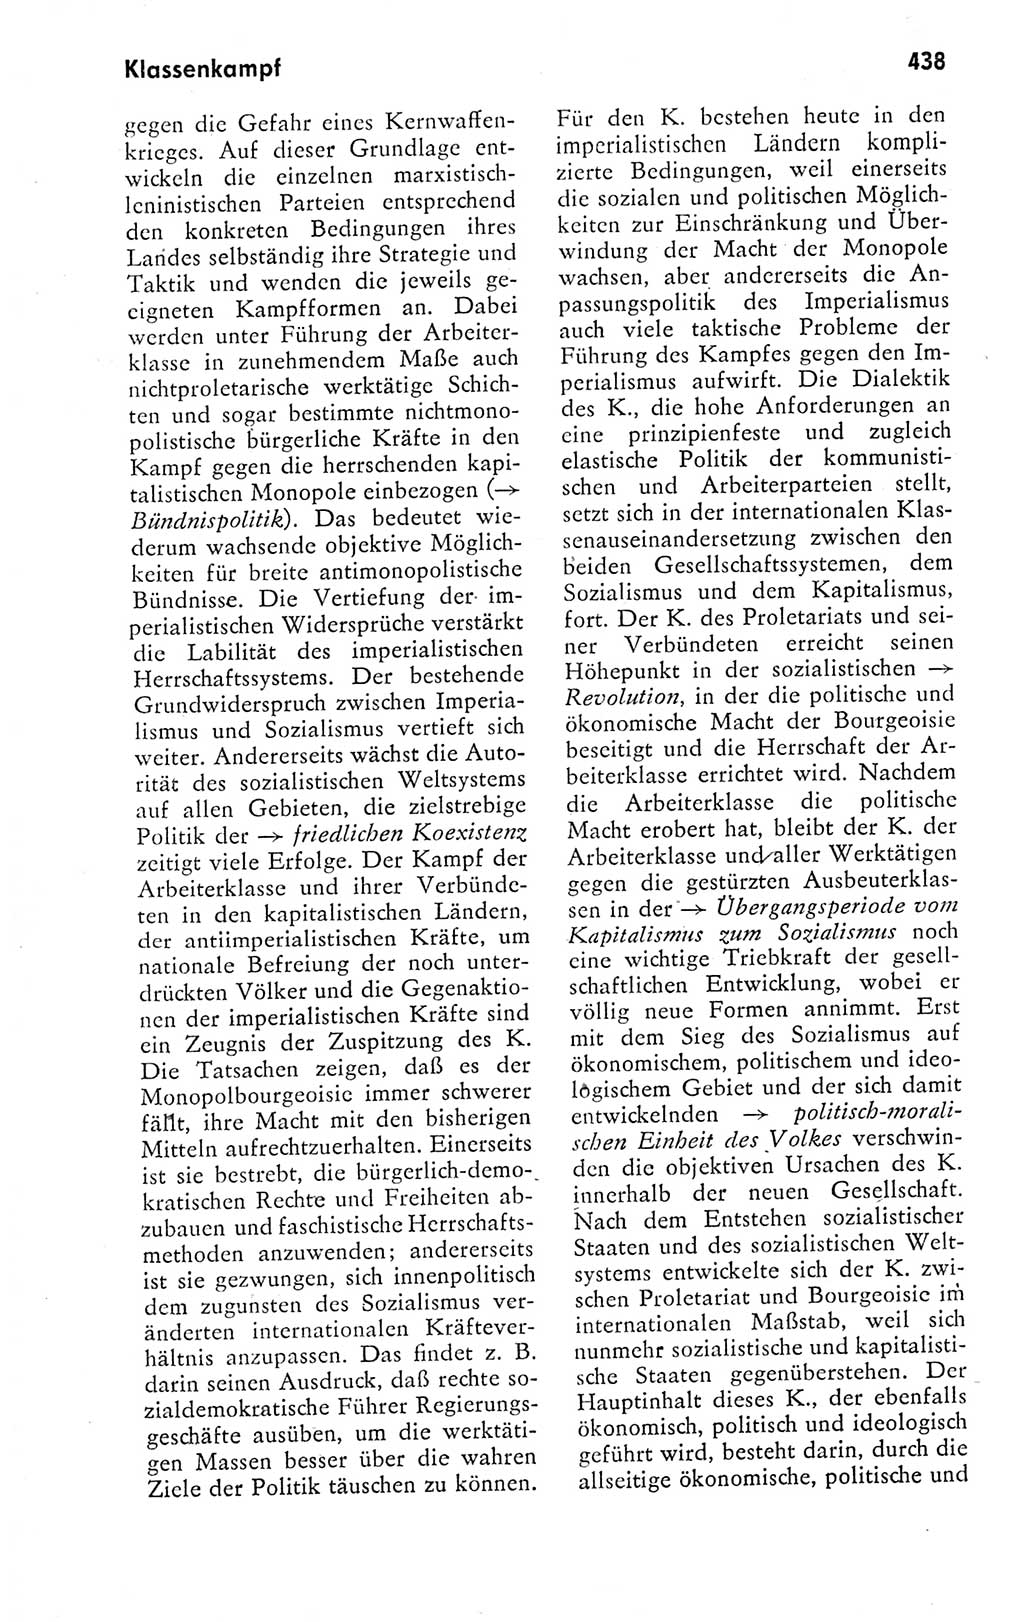 Kleines politisches Wörterbuch [Deutsche Demokratische Republik (DDR)] 1978, Seite 438 (Kl. pol. Wb. DDR 1978, S. 438)